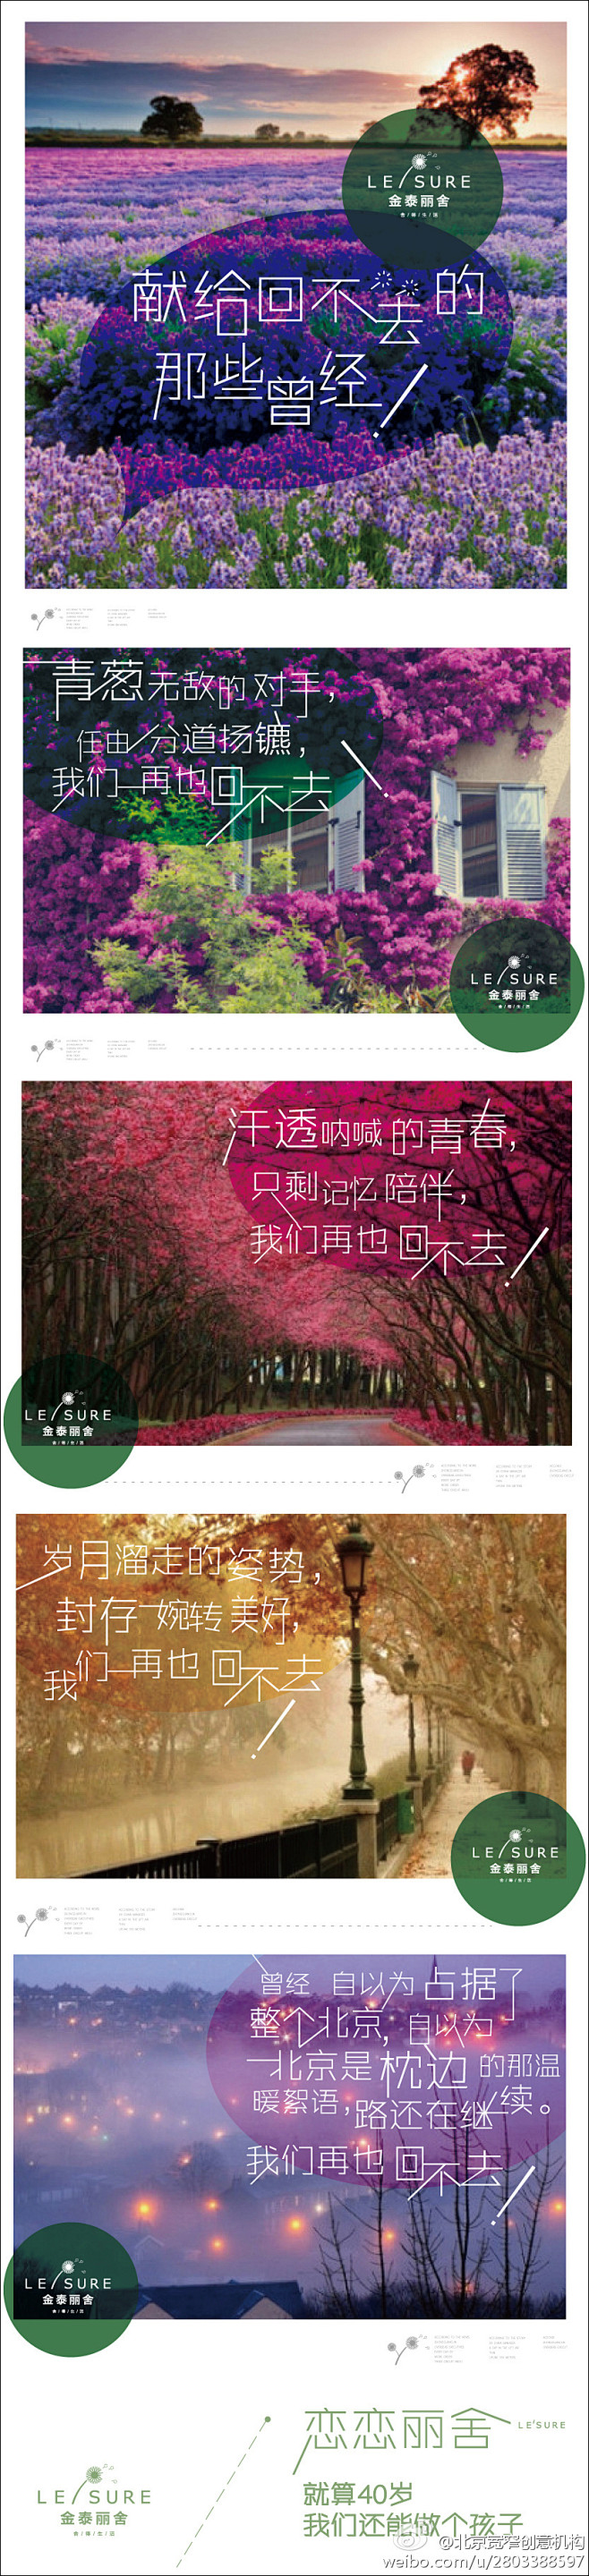 北京宽窄创意机构的照片 - 微相册